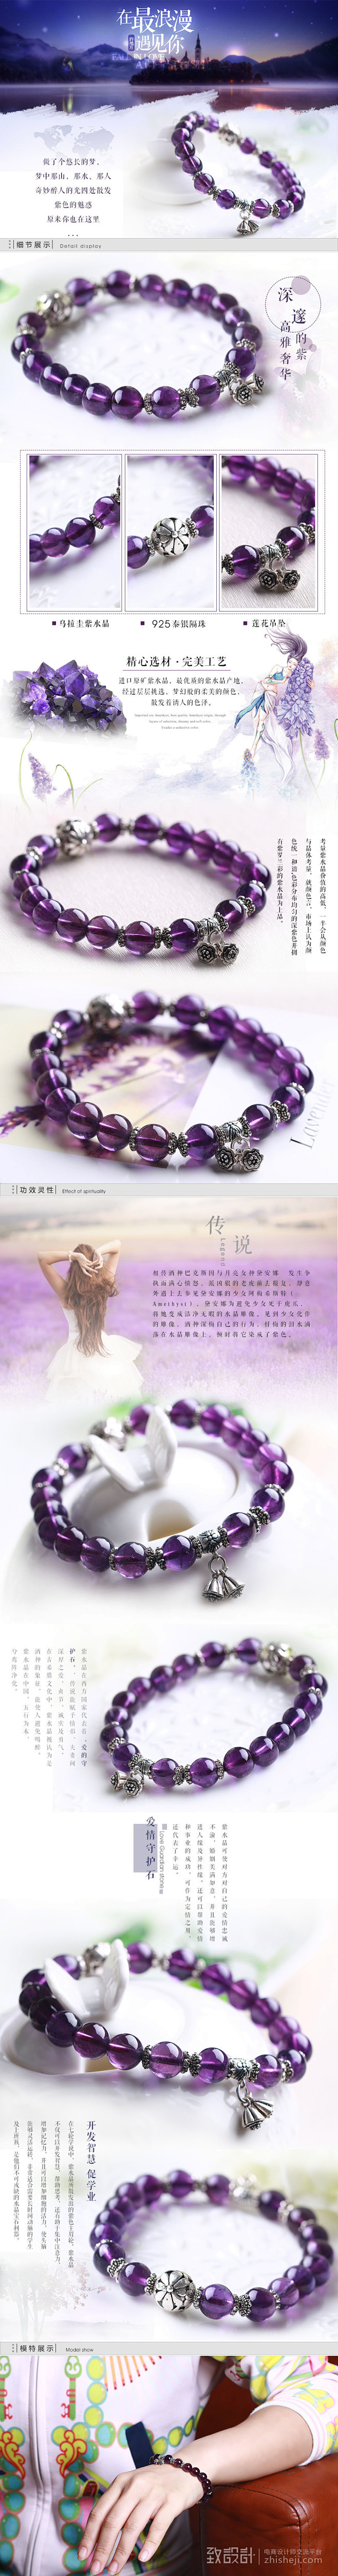 紫水晶莲蓬手链